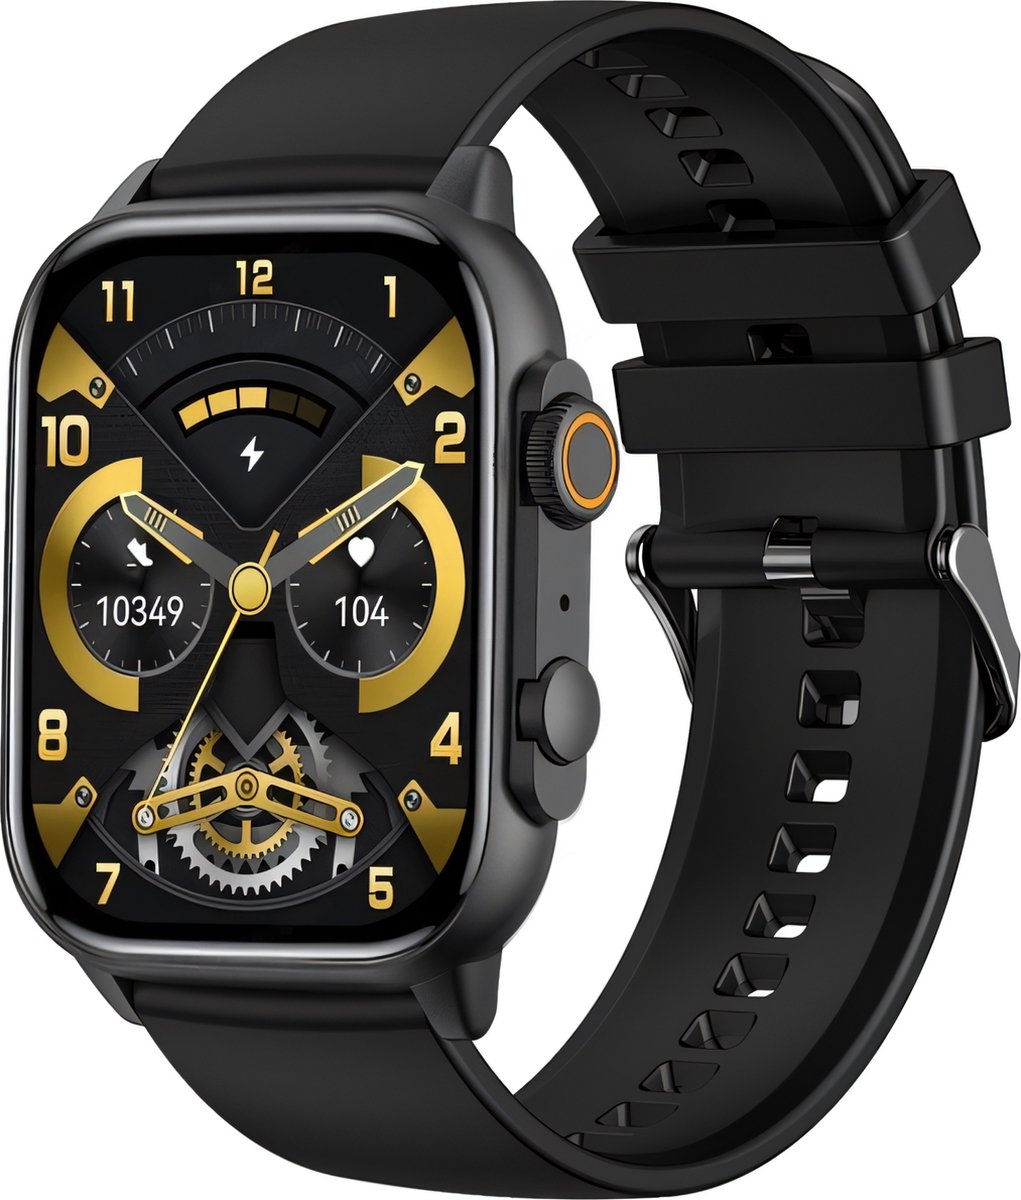 Cinturio Commander Smartwatch - Zwart - Omoled Scherm - Voor heren en voor dames - Cinturio